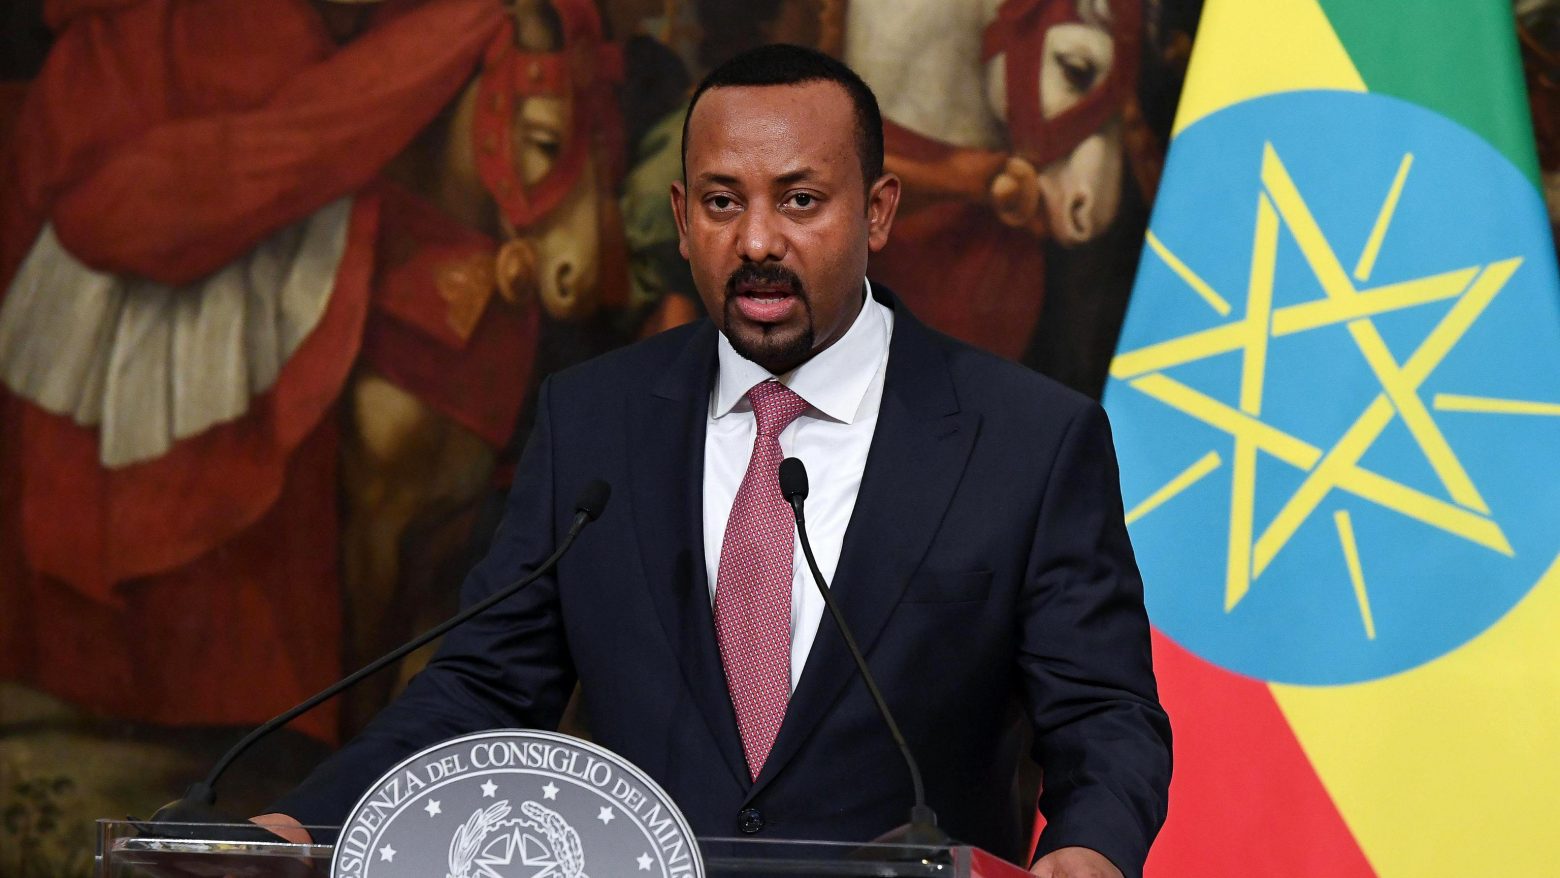 Αιθιοπία - Ο πρωθυπουργός πήρε... το όπλο του και έφυγε για το μέτωπο